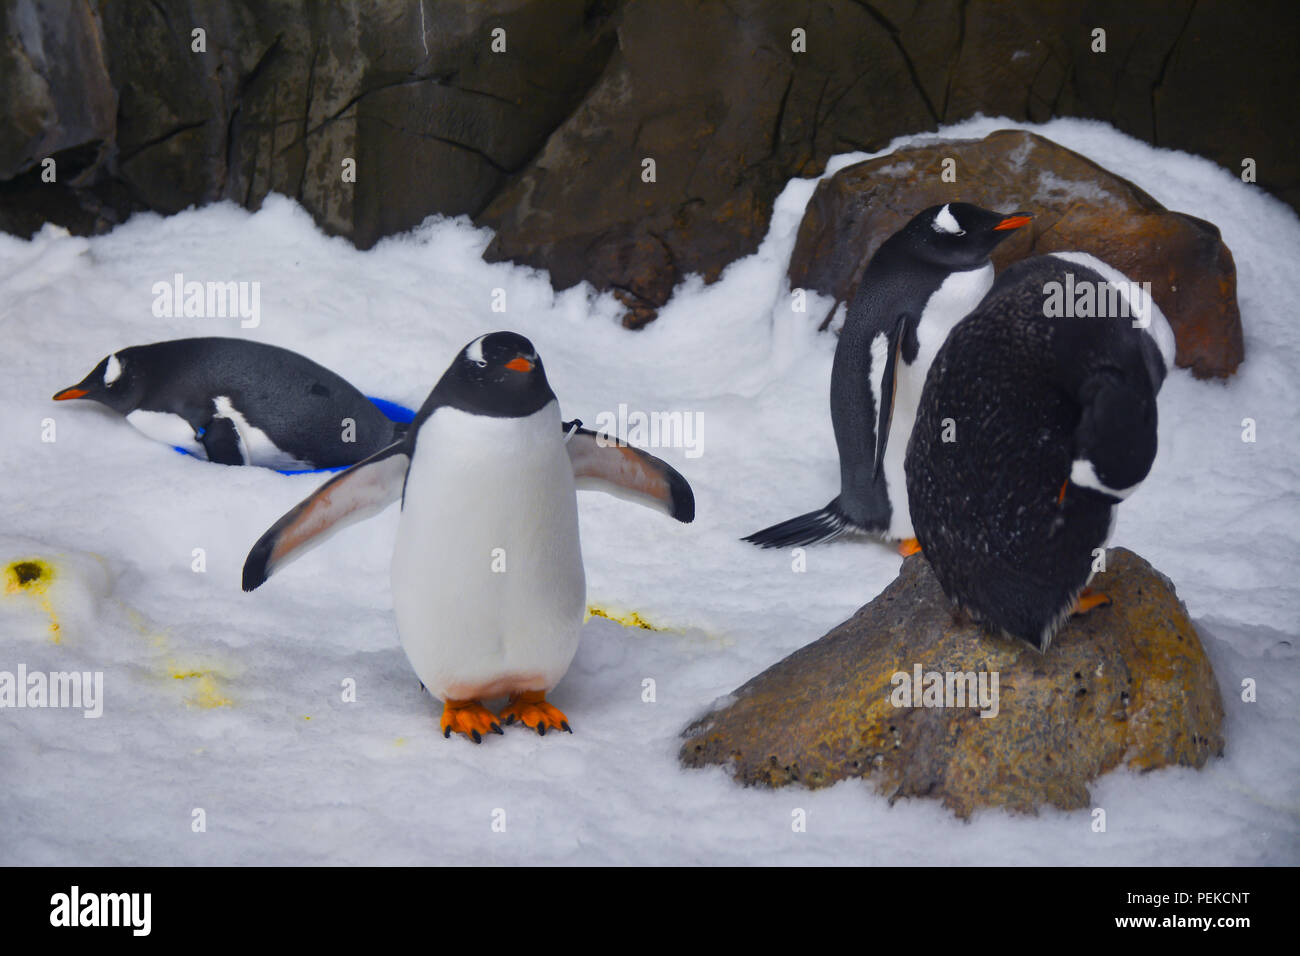 Penguins walk on ice Stock Photo